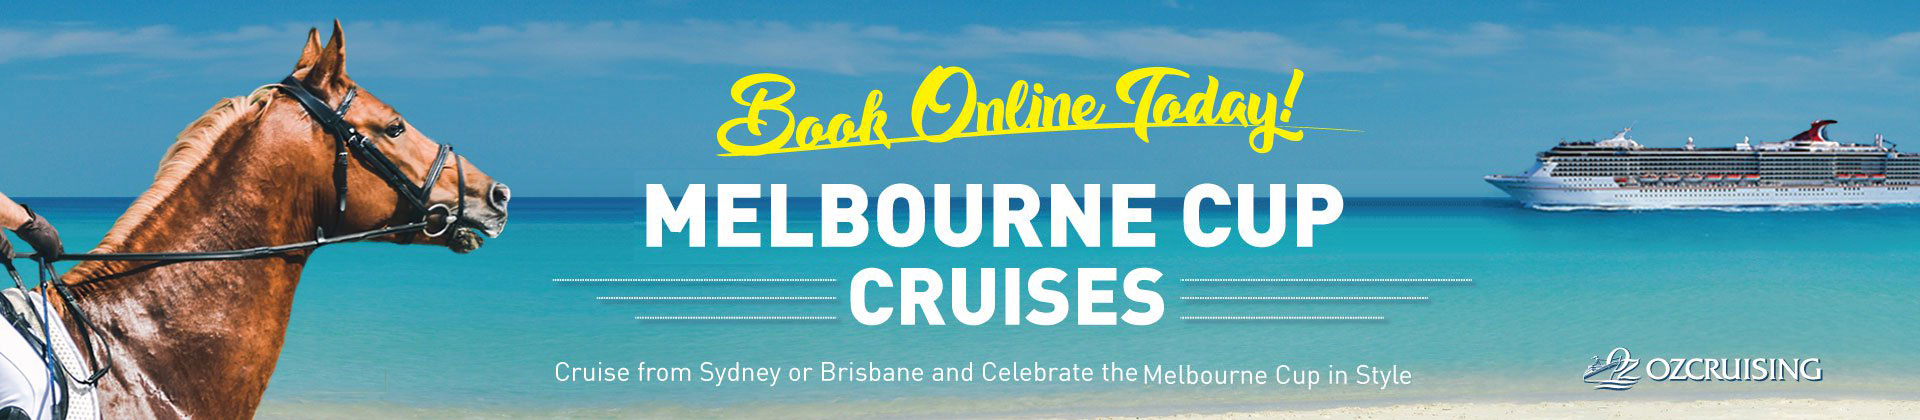 Melbourne Cup Cruises | Ozcruising.com.au